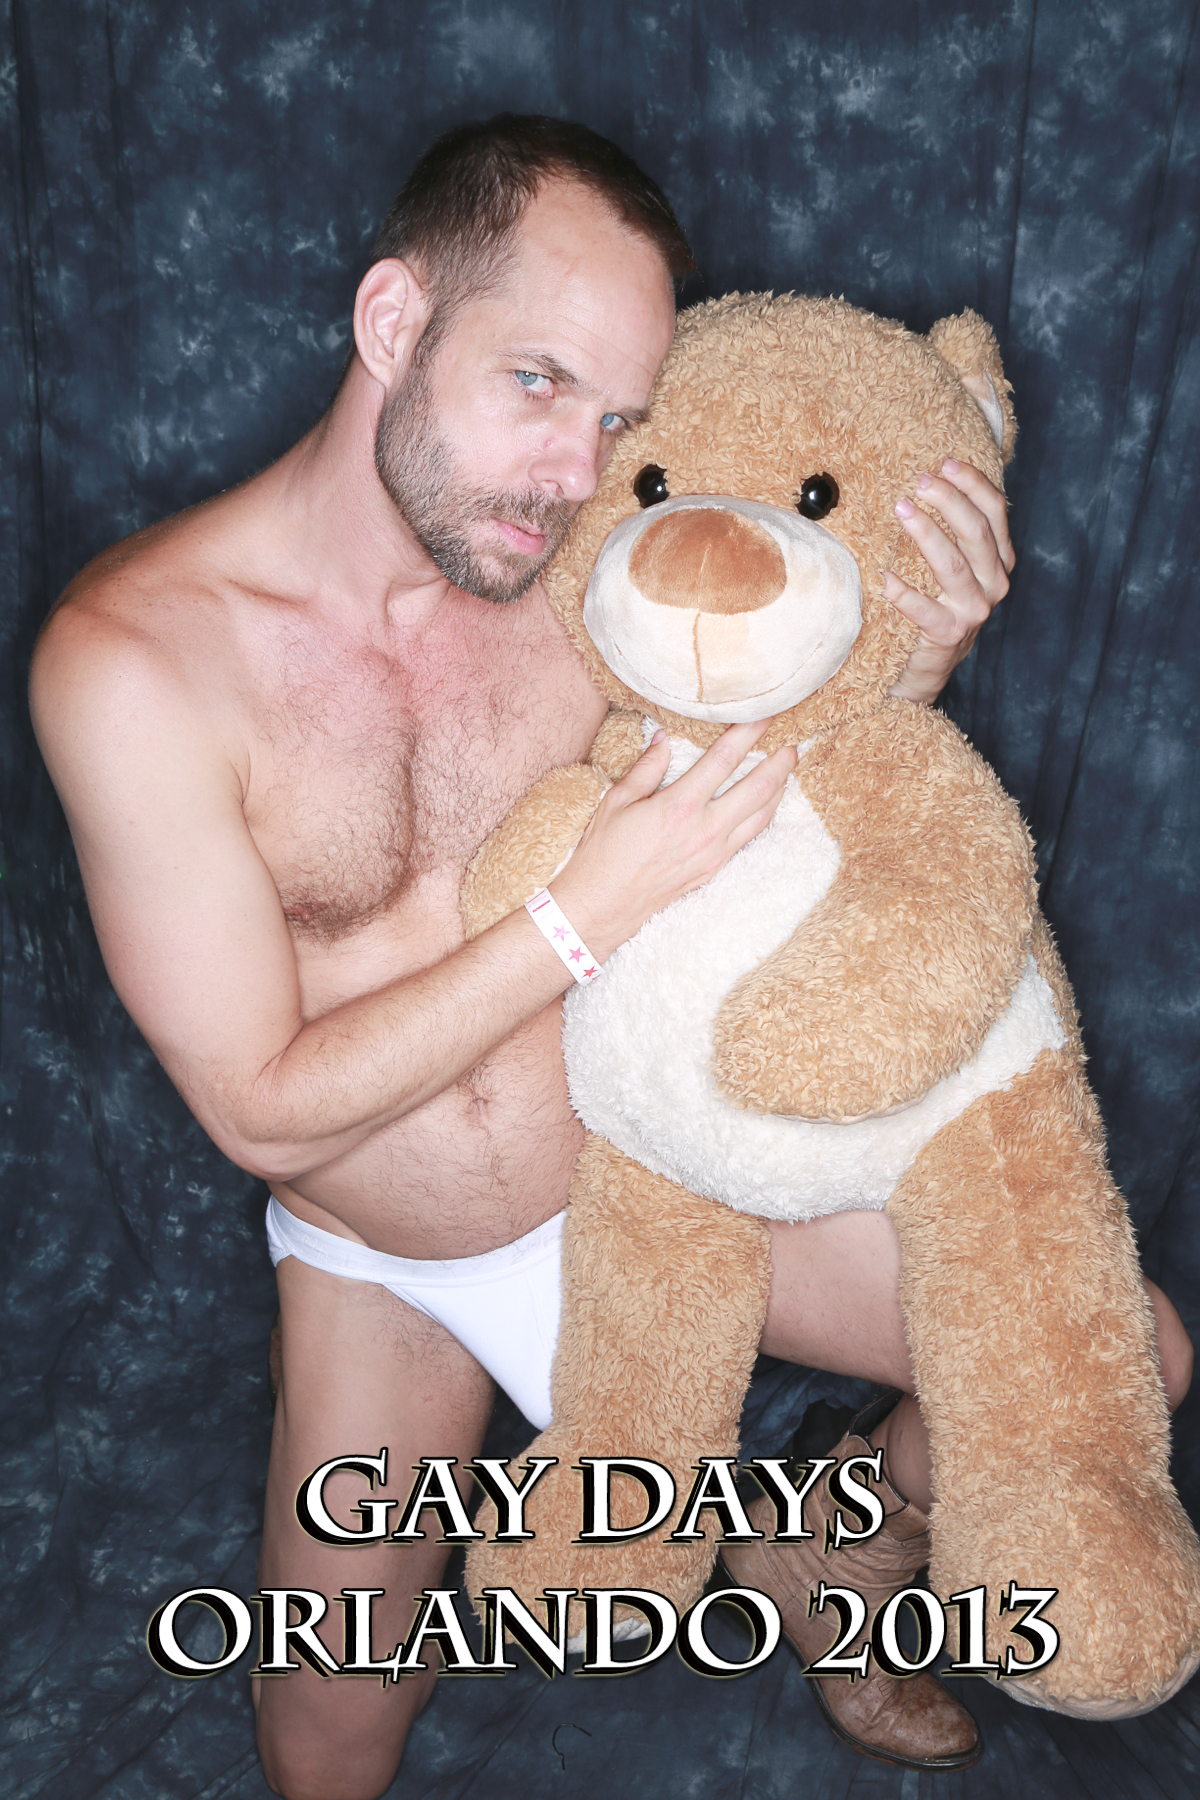 Teddy bear porn